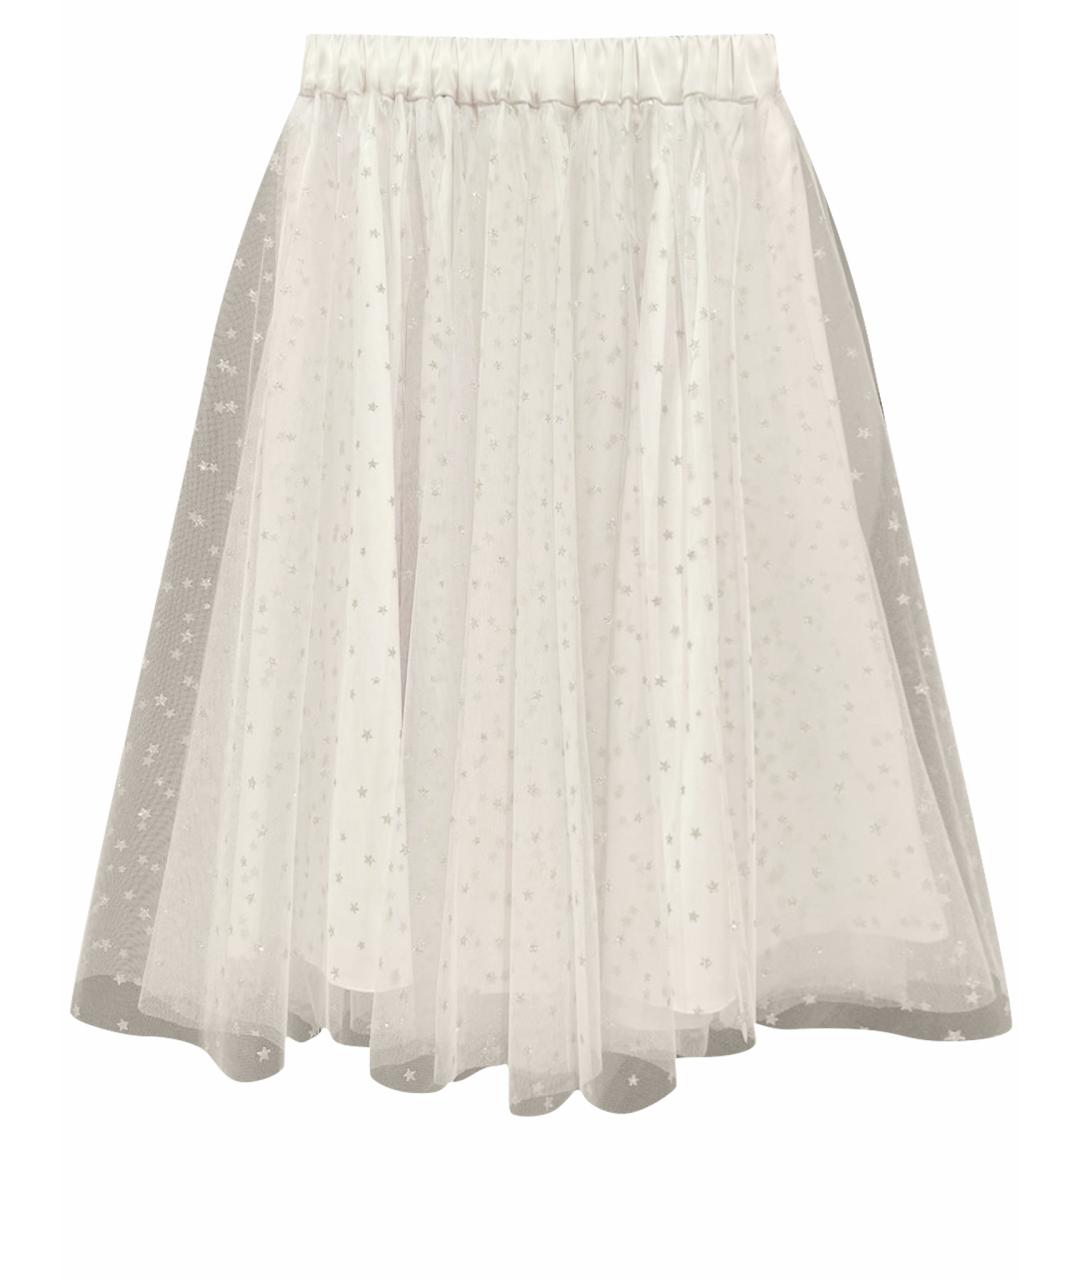 YANA DRESS Белая полиамидовая юбка миди, фото 1